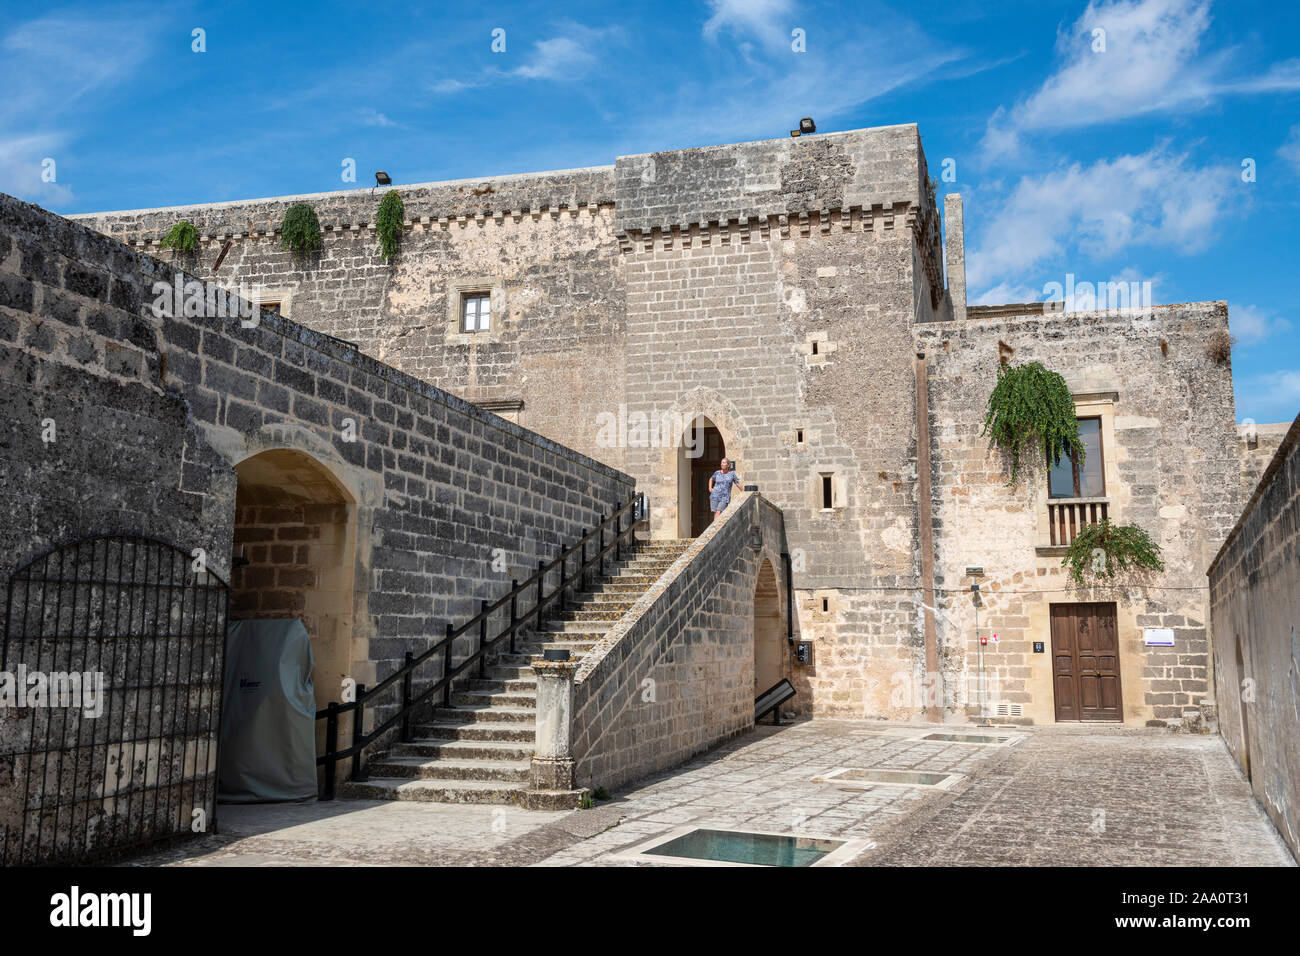 Patio exterior del castillo de' Monti, en Corigliano d'Otranto, Apulia (Puglia) en el sur de Italia Foto de stock